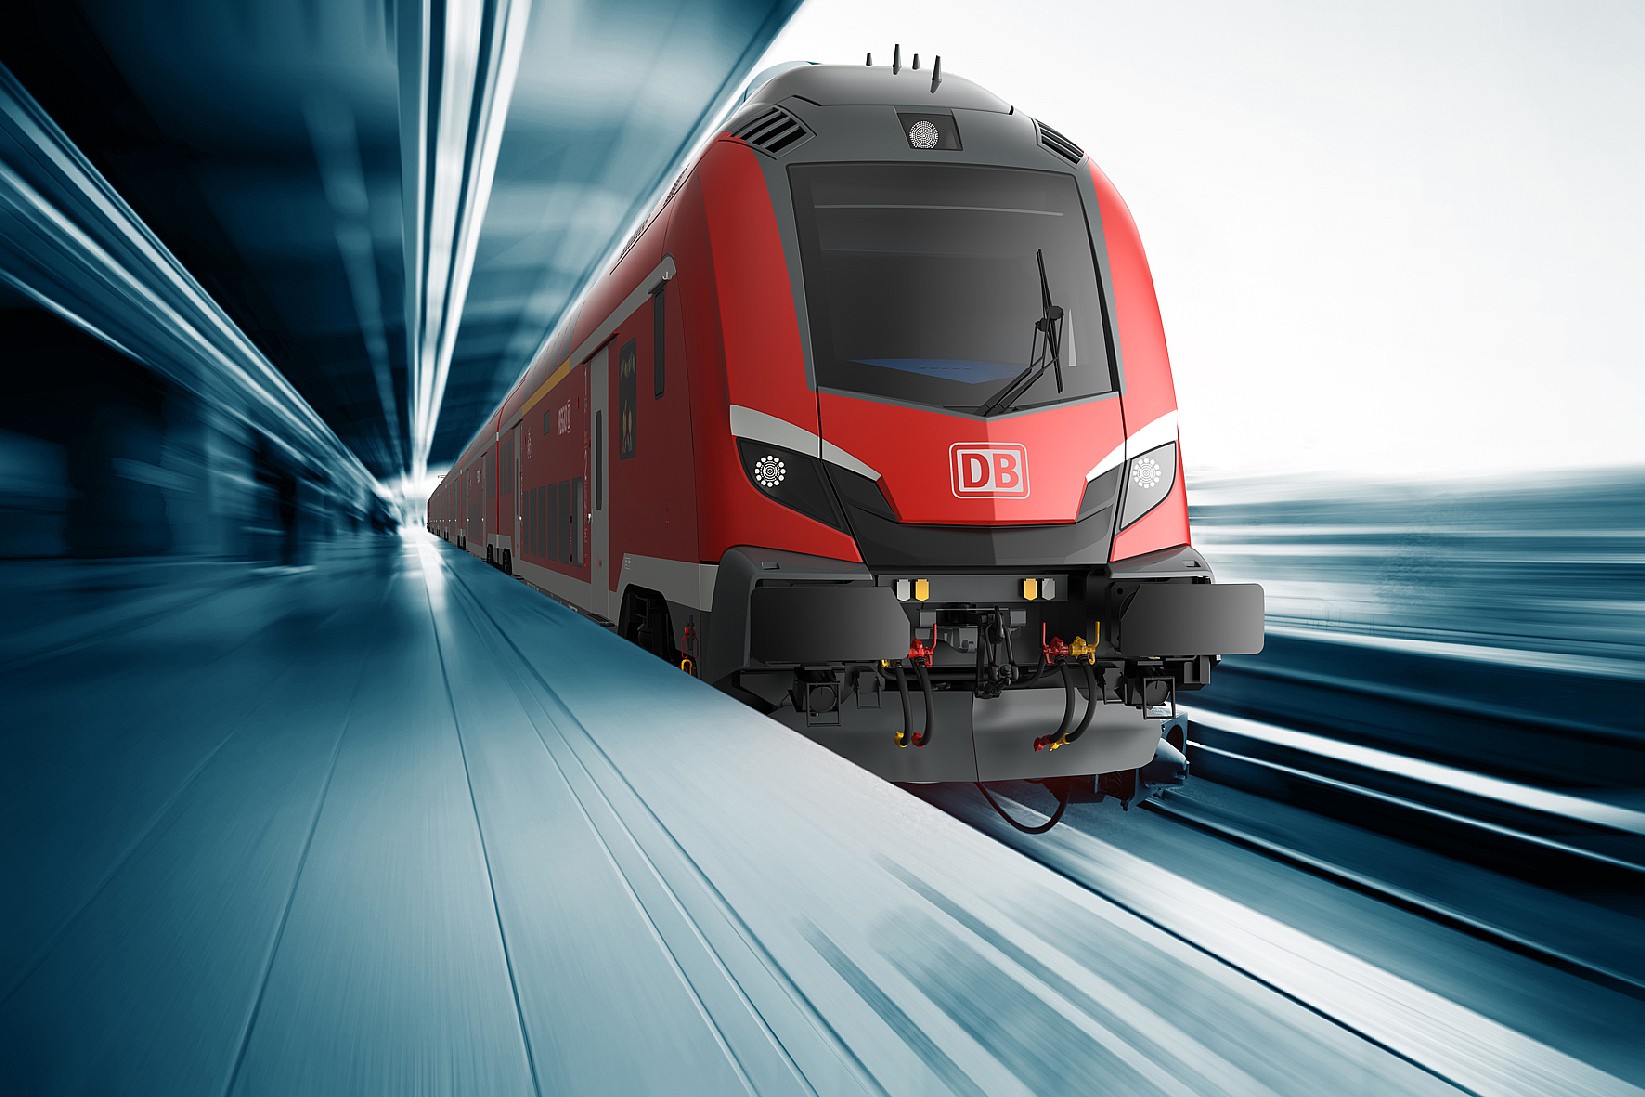 Der neue MÃ¼nchen-NÃ¼rnberg-Express soll demnÃ¤chst auf die Strecke. (Grafik: Â© Å koda Transportation)